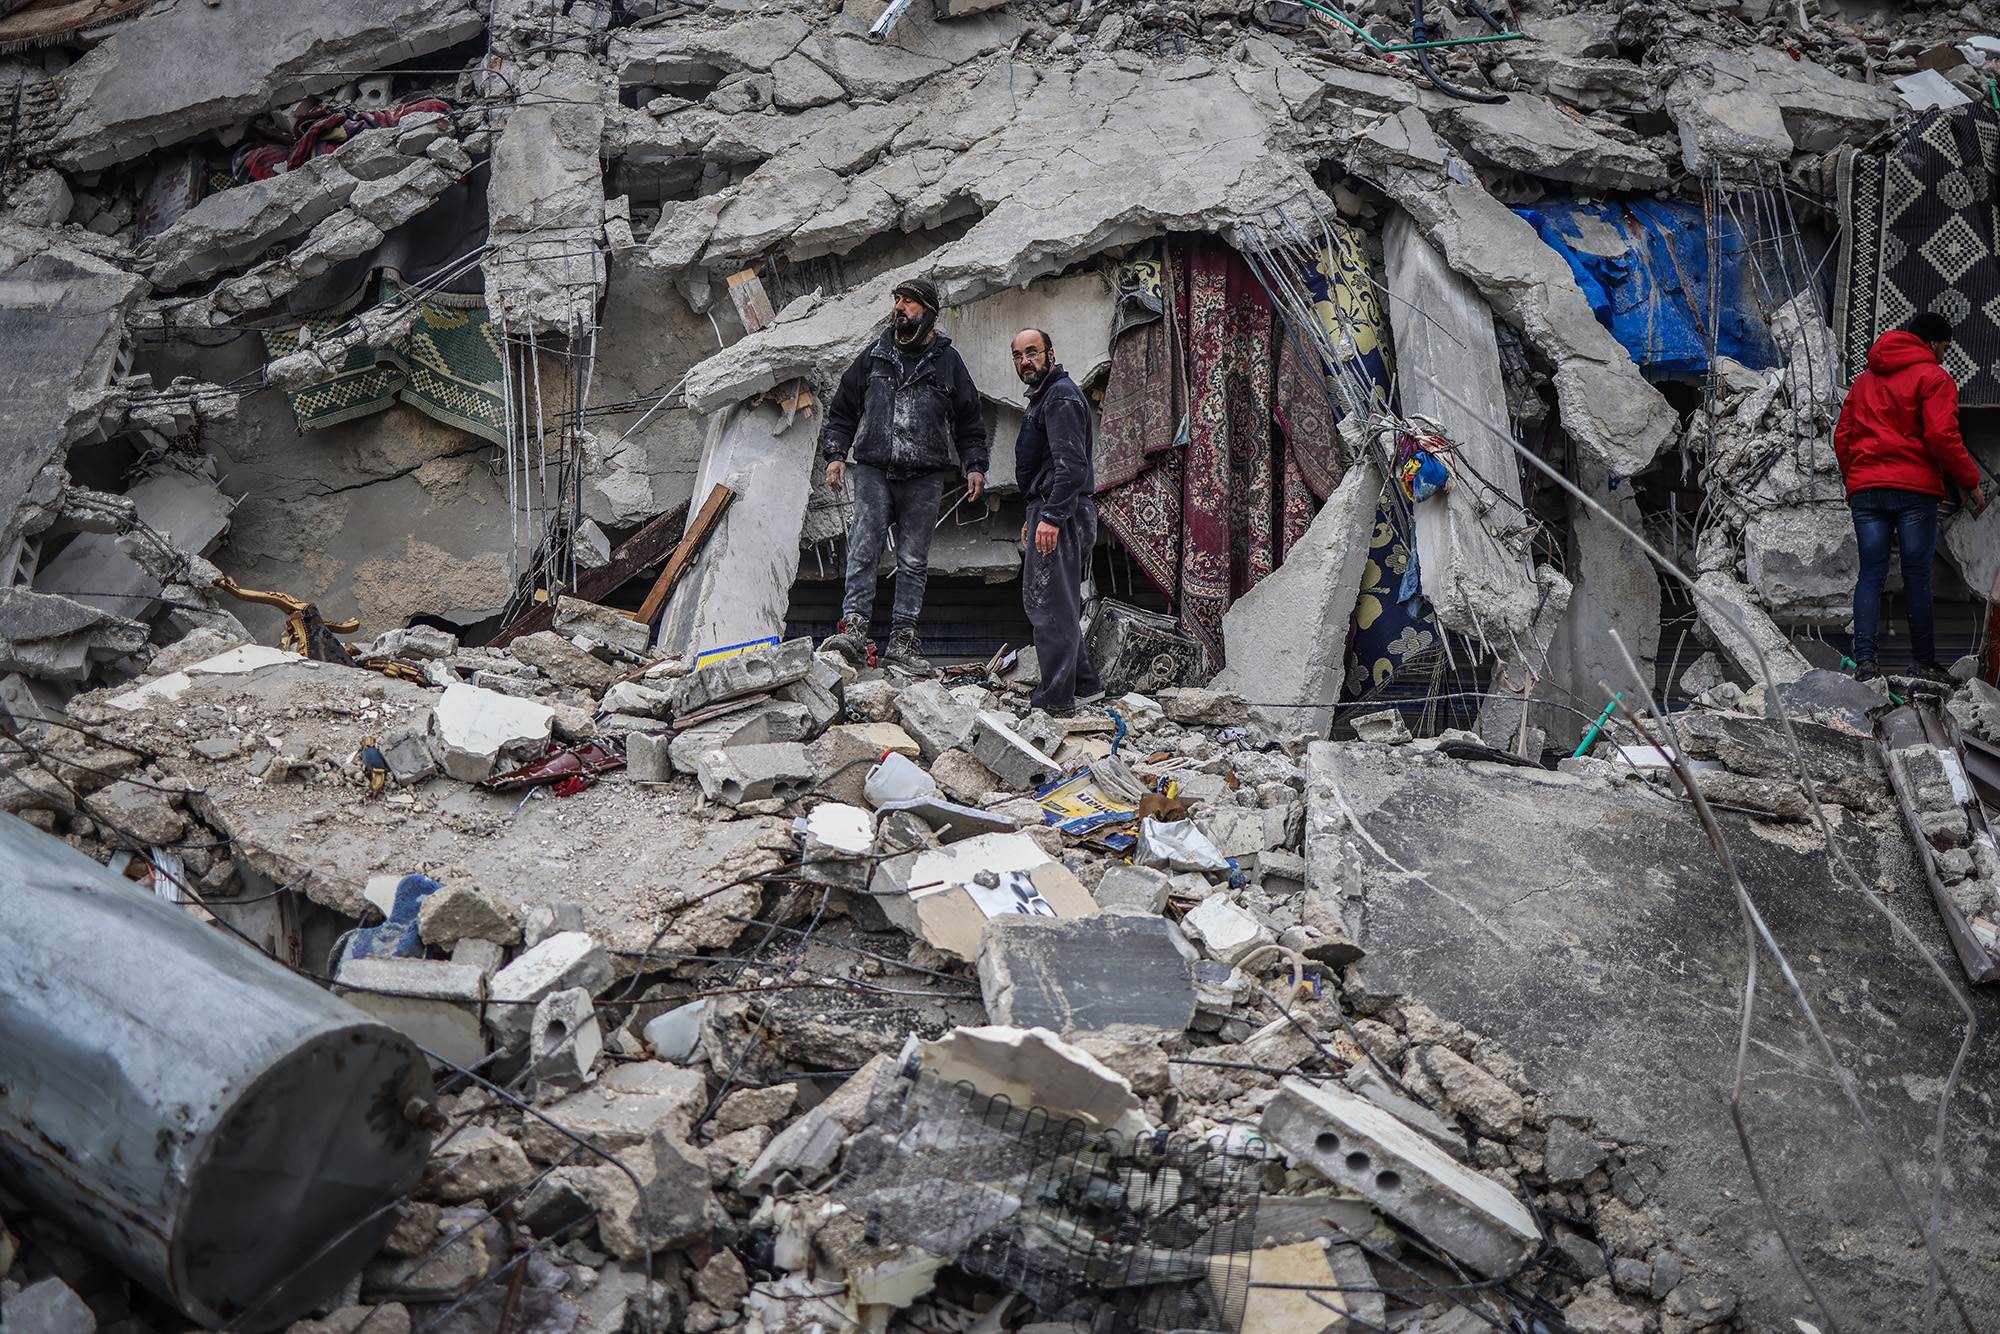  مدنيون سوريون يعملون على إنقاذ أشخاص محاصرين تحت مبنى مدمر في إدلب السورية، اليوم الاثنين